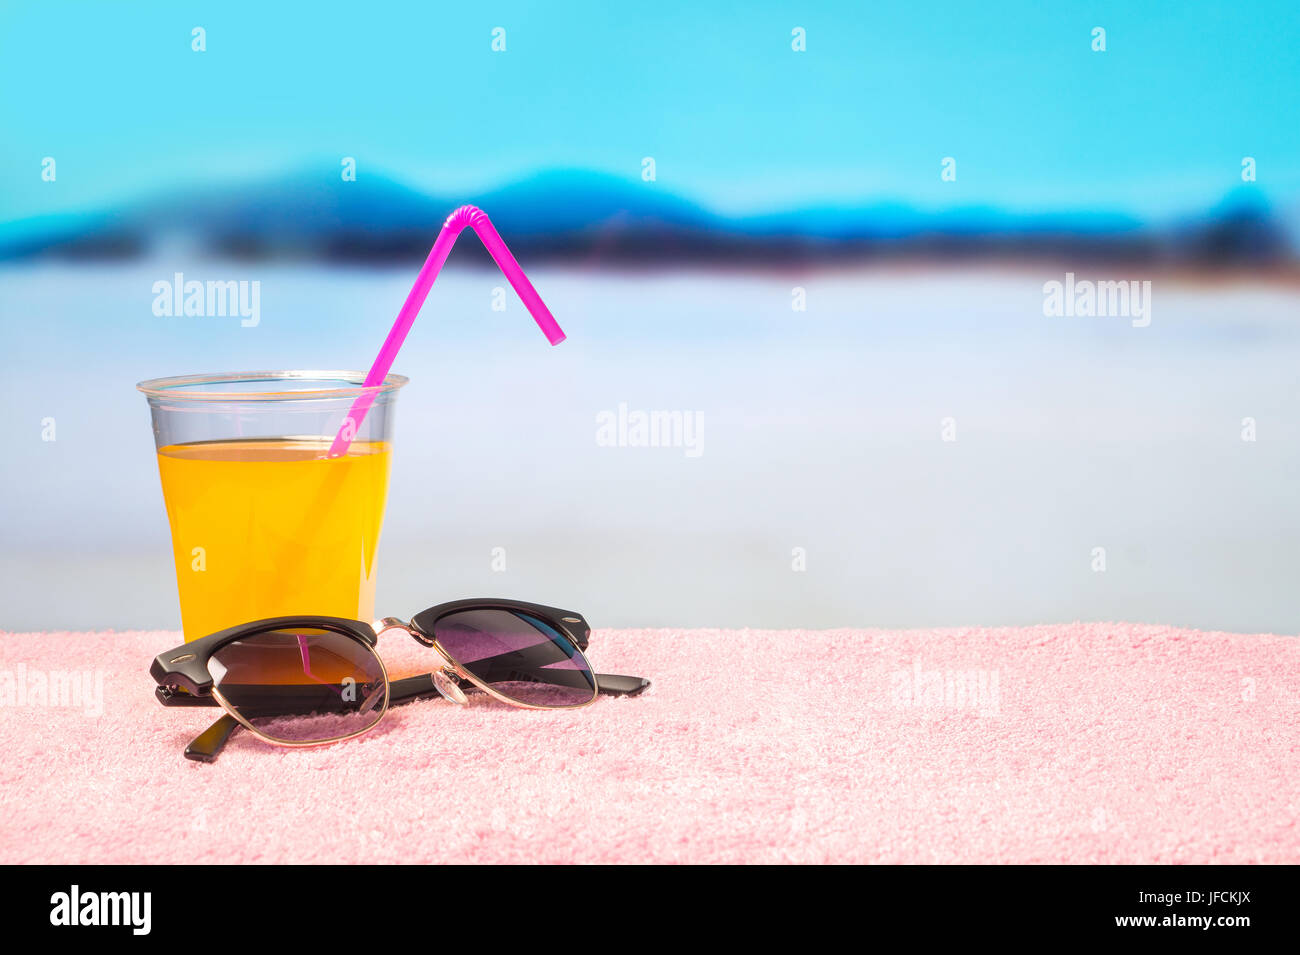 Paradies Urlaub Hintergrund mit gelben cocktail auf Sonnenbrille am Strand. Perfekt für Sommerschlussverkauf und Kampagne Förderung bieten. Urlaubsparadies. Stockfoto